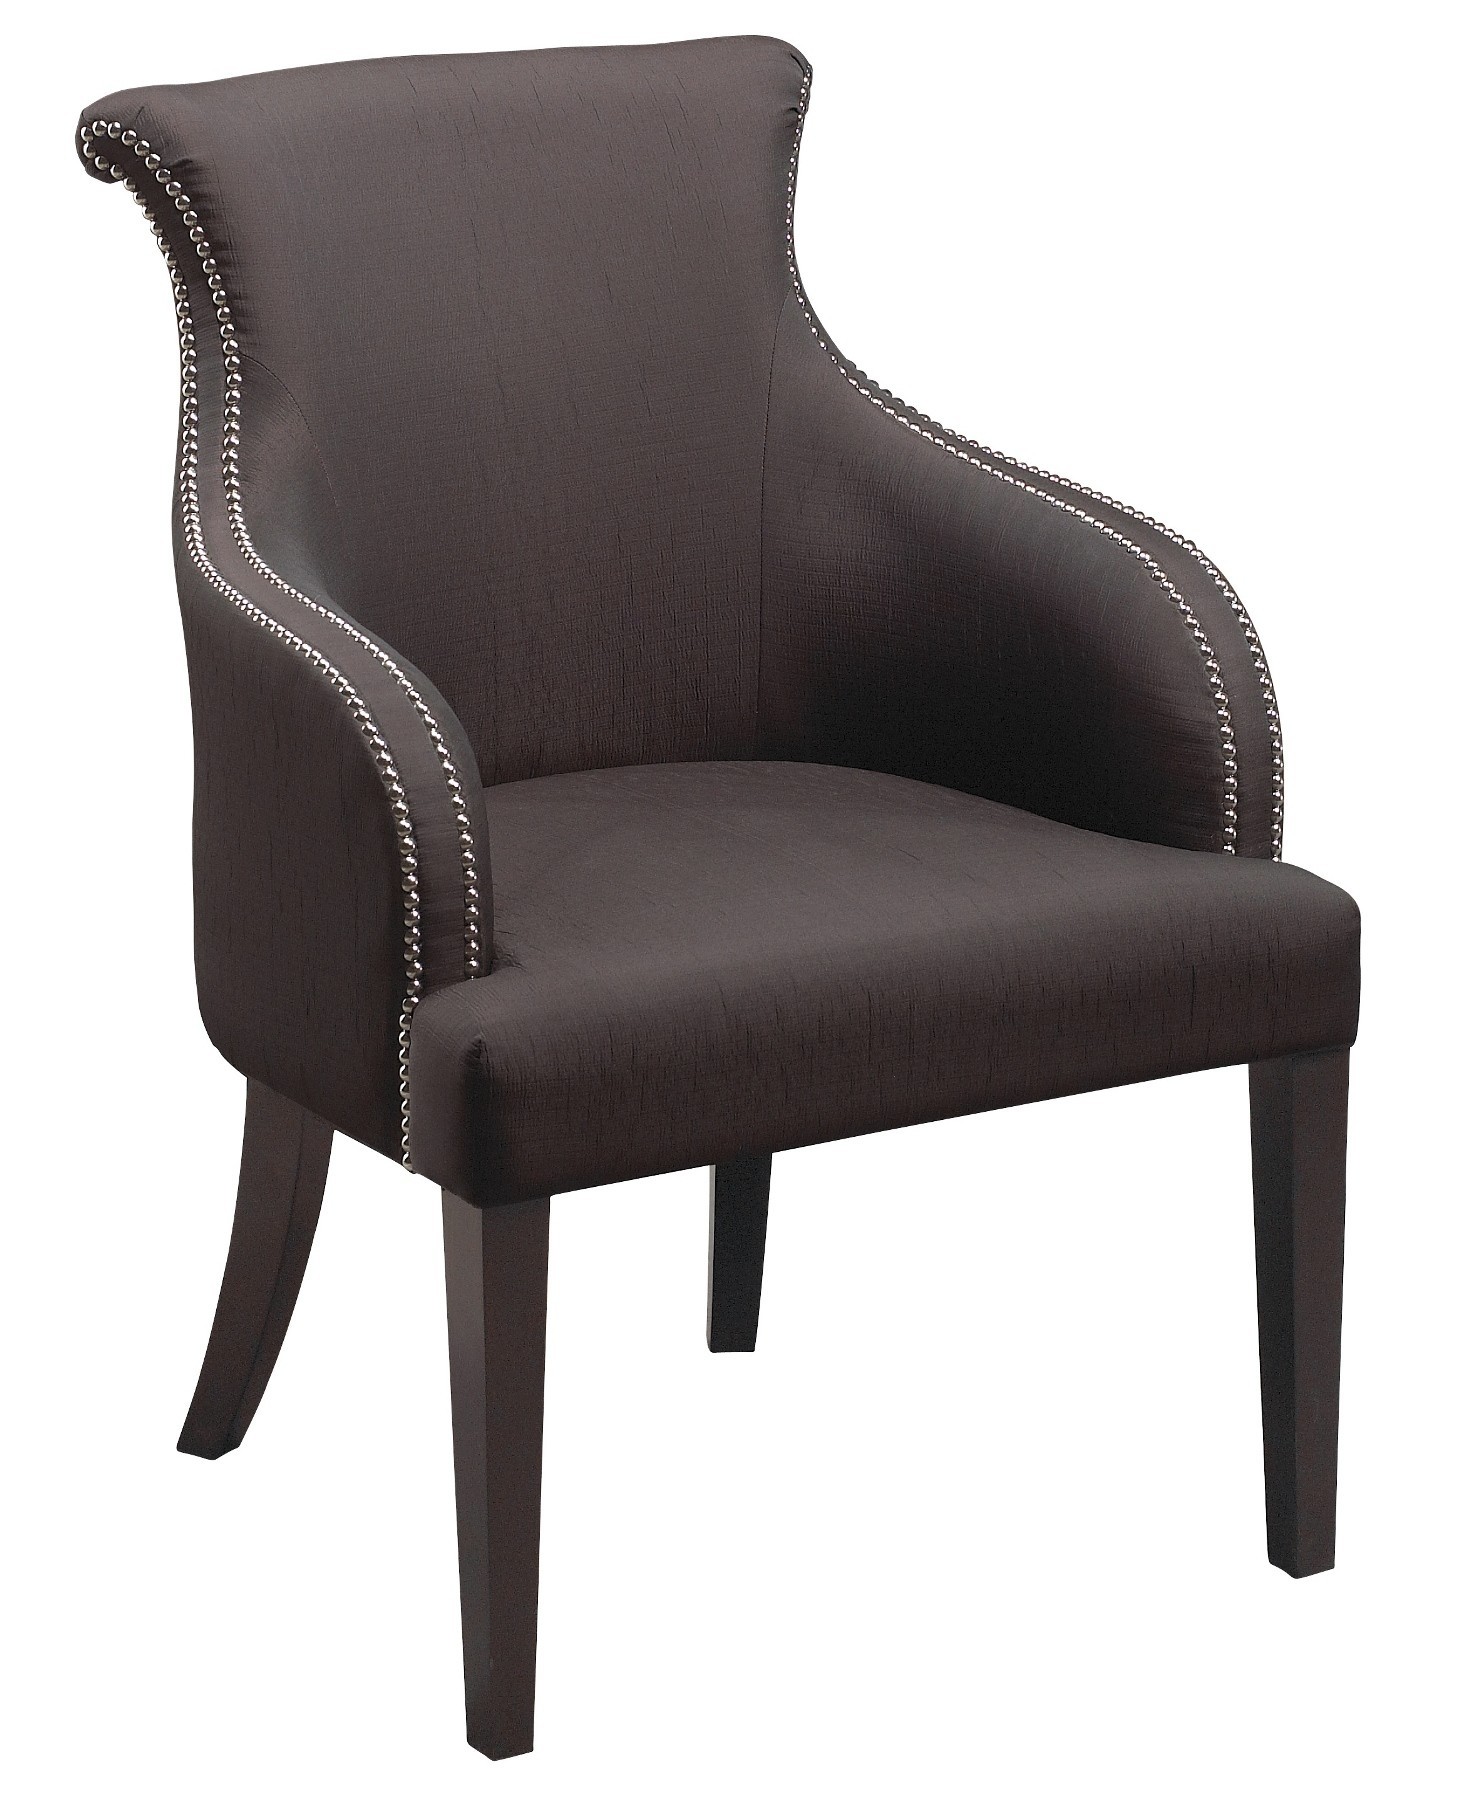 Stein World Furniture Cheri Accent Chair, Espresso